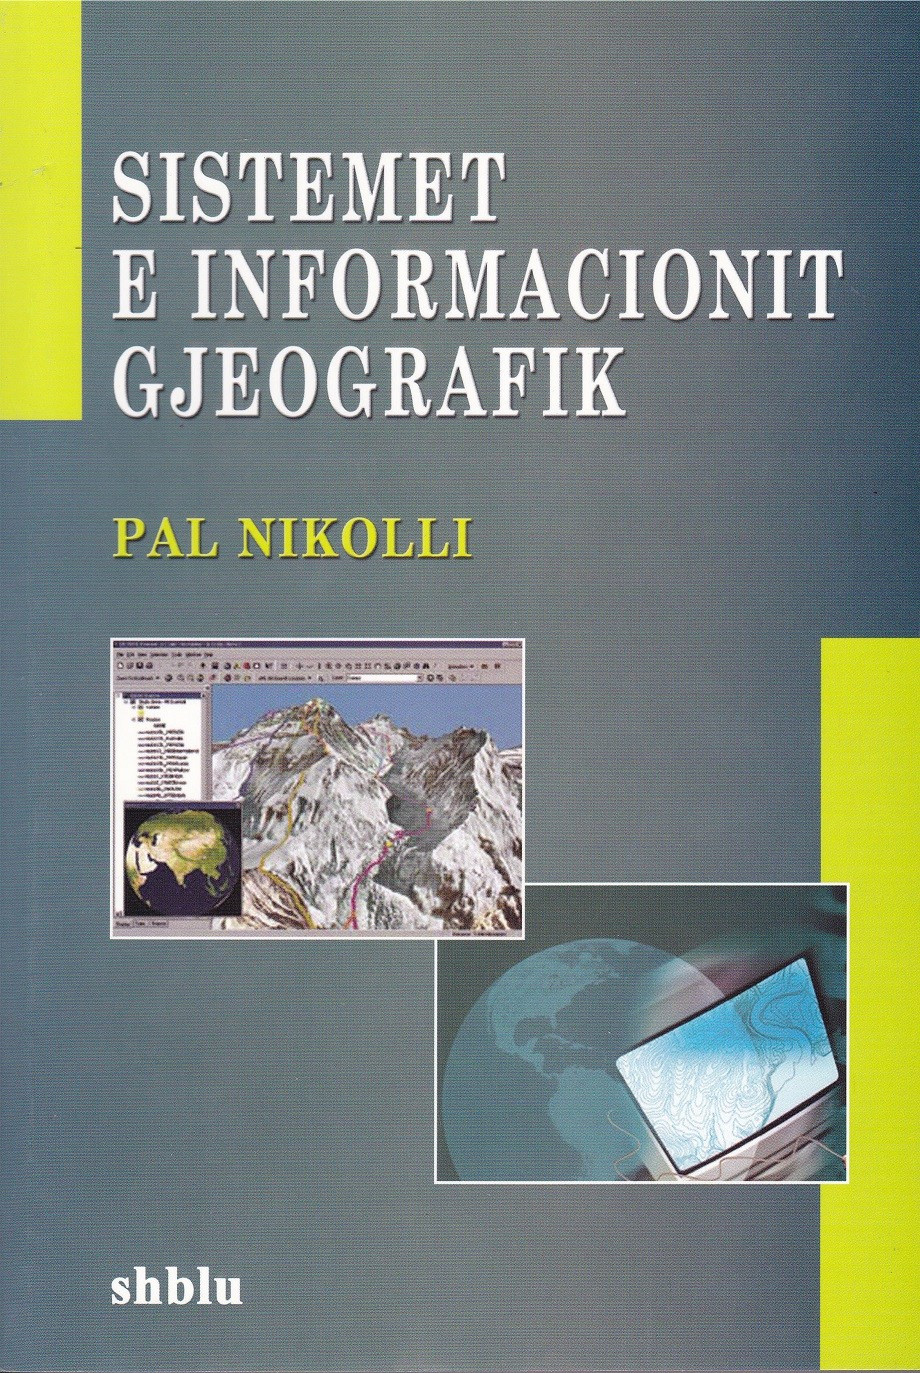 Sistemet e informacionit gjegrafik